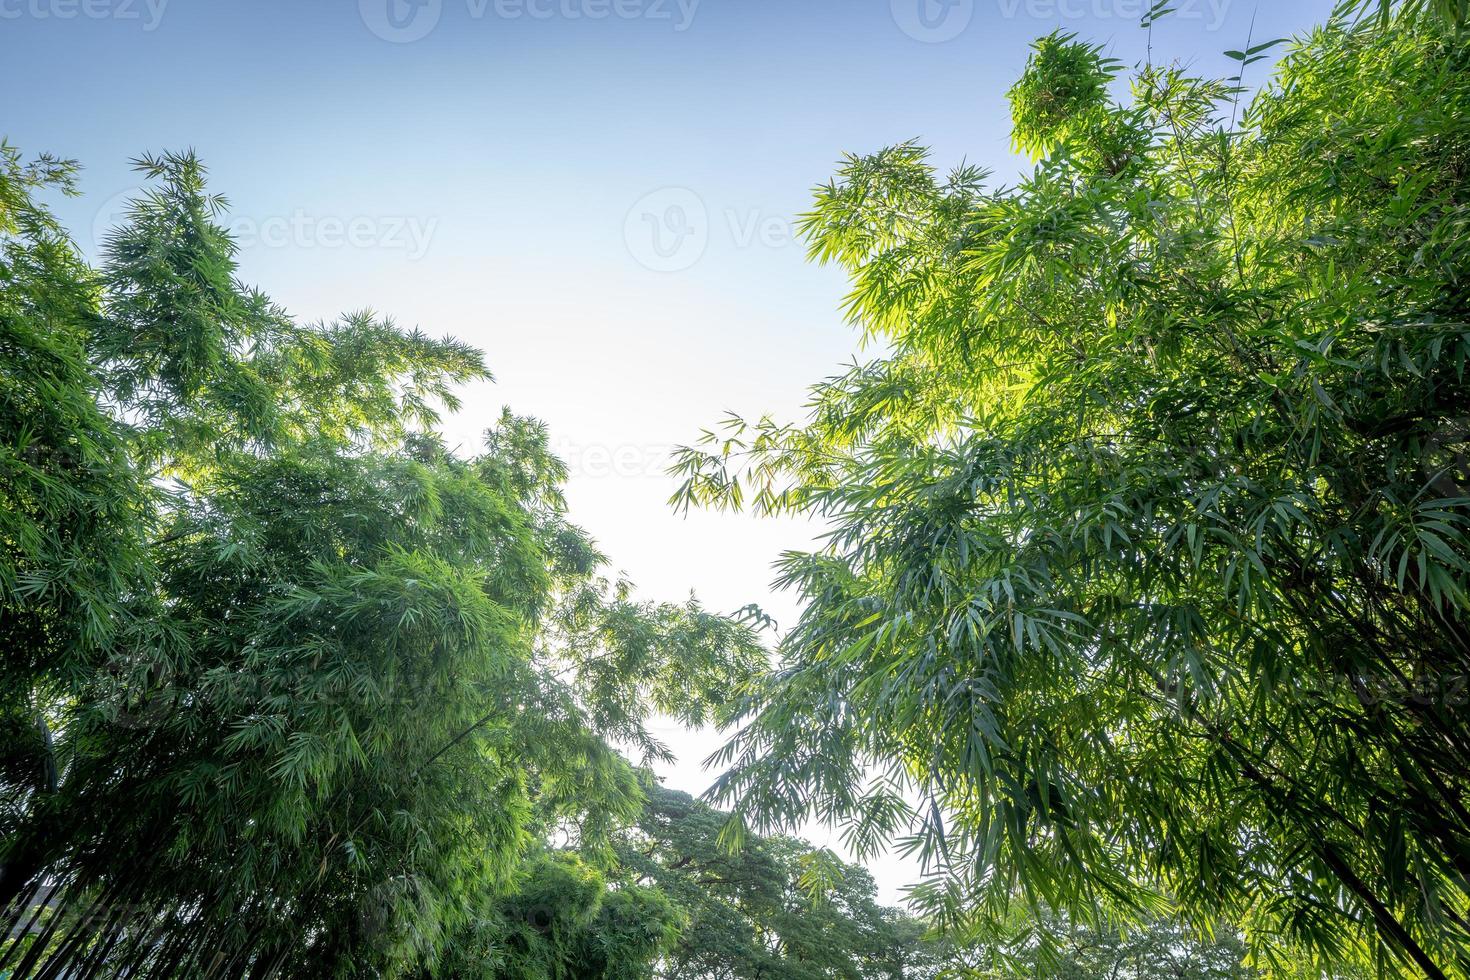 bambuträdet i skogsträdgården med fälgljus från öppen himmel, representerar den friska och rikliga naturen i Asien. foto